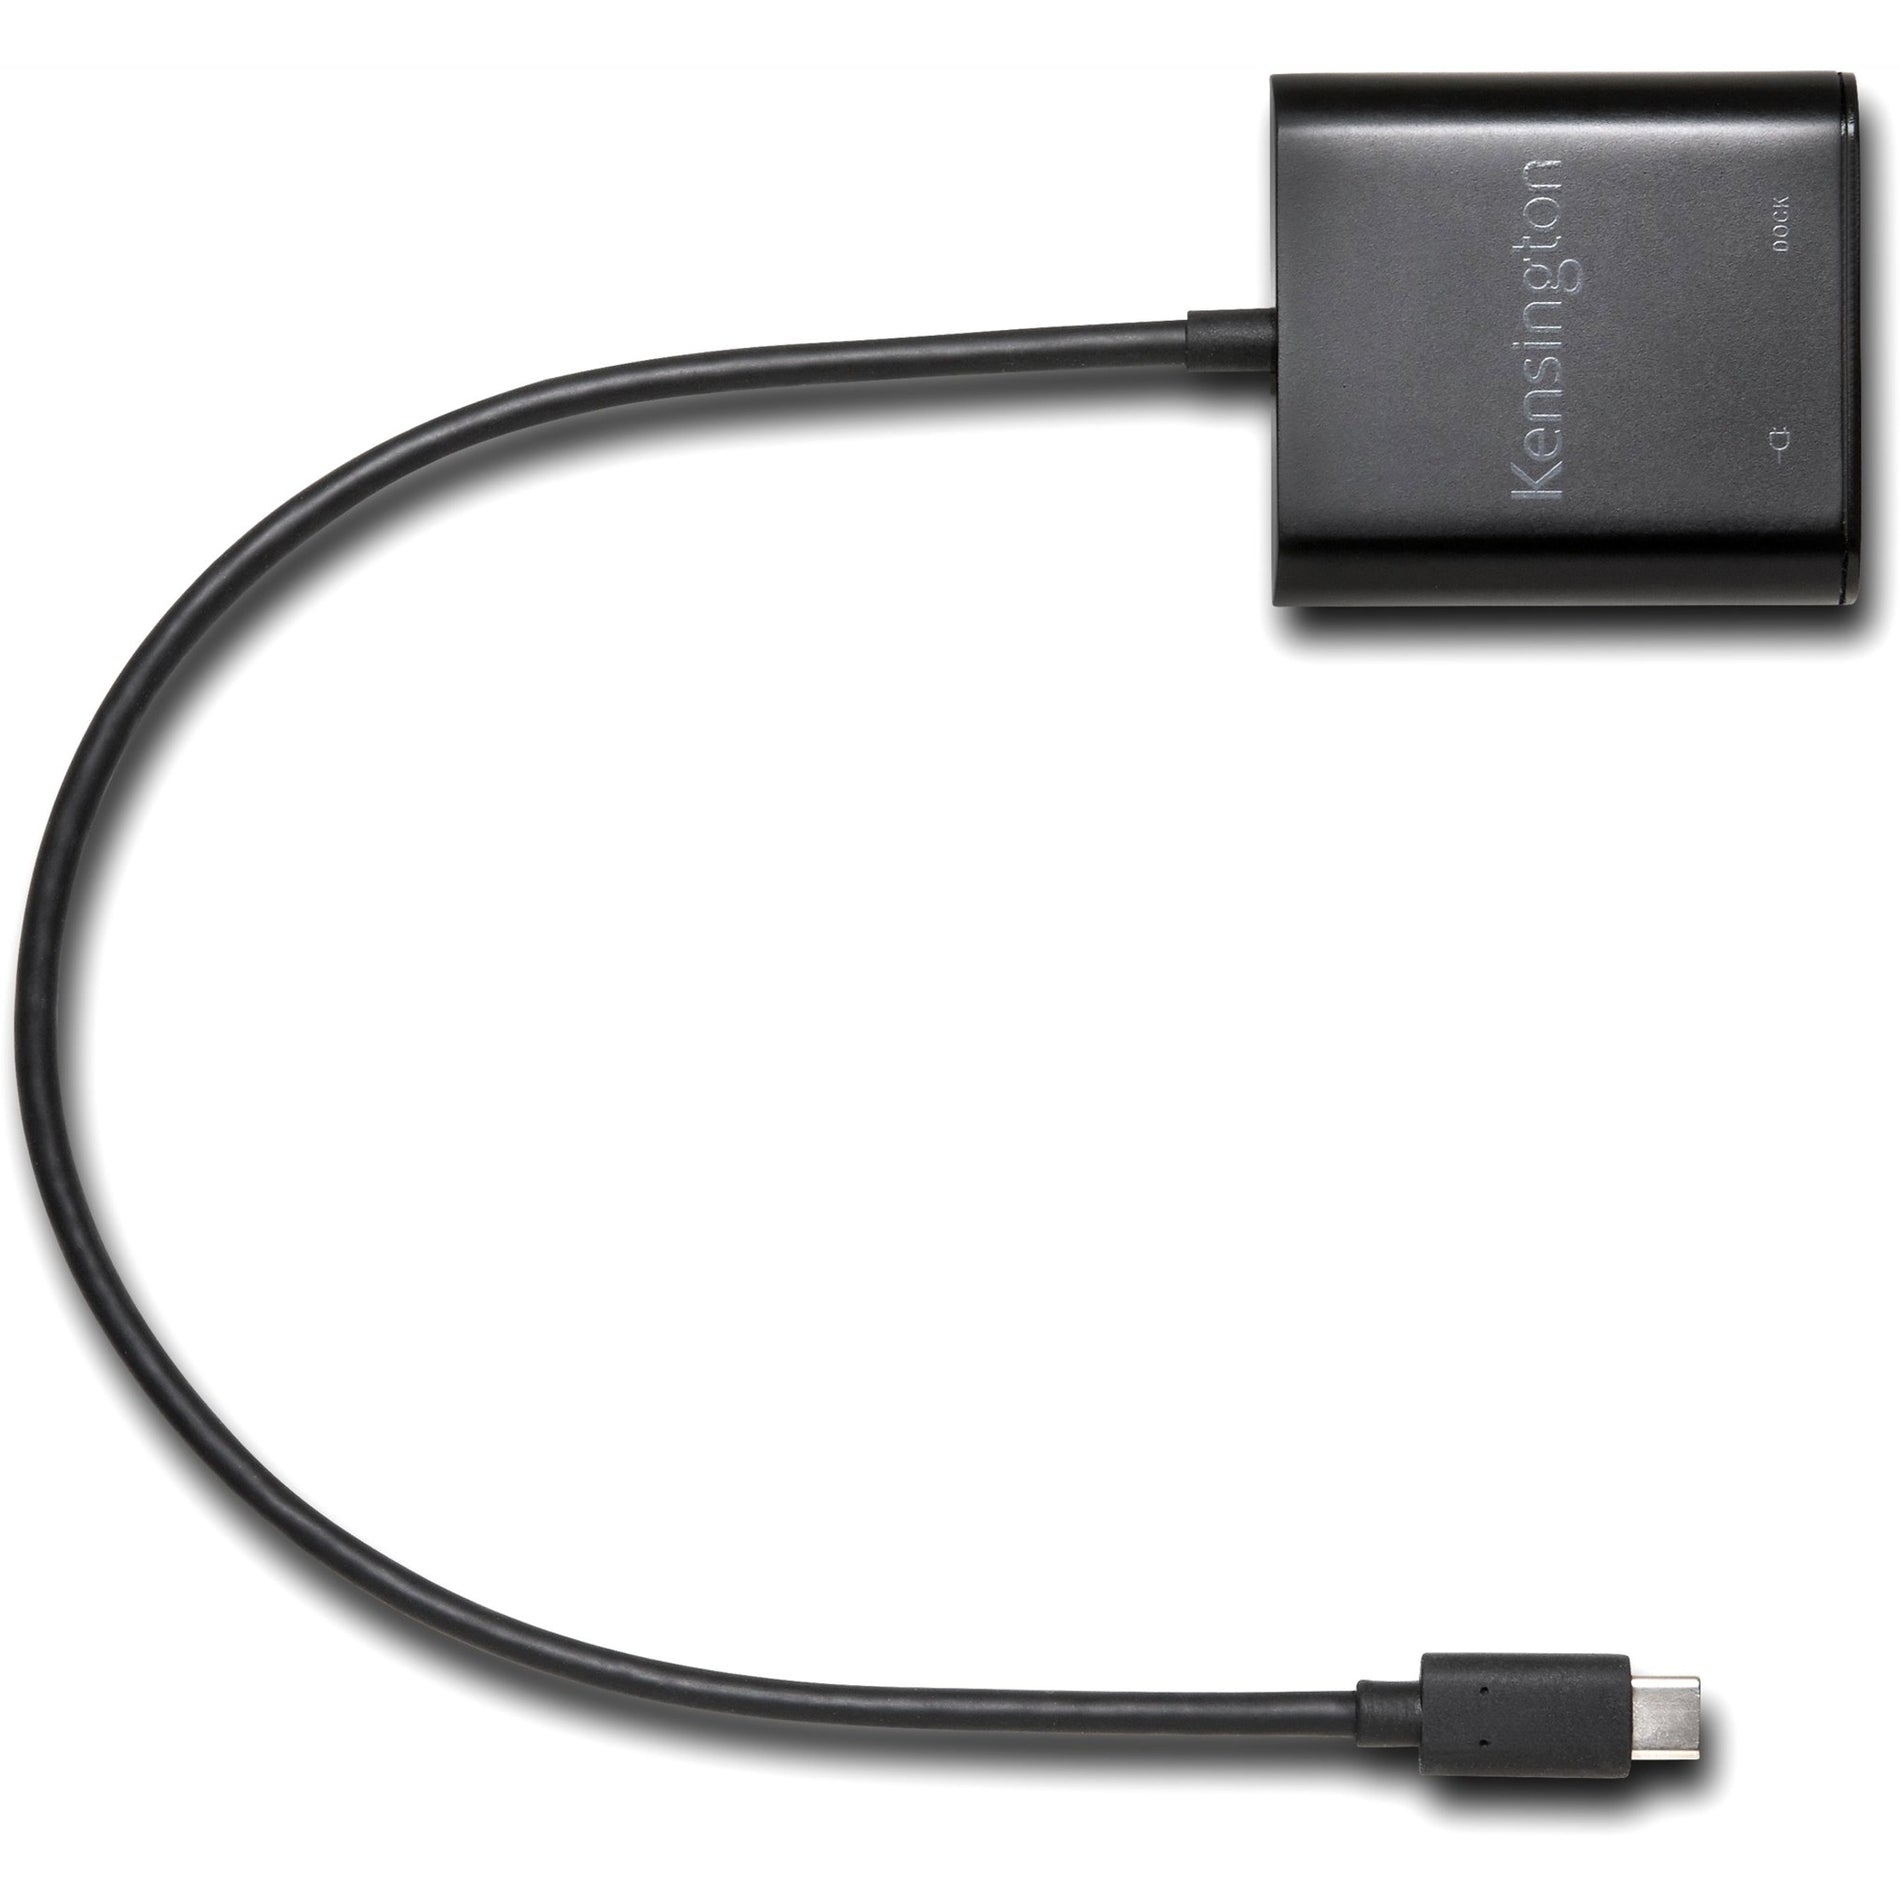 Kensington K39100WW PD1000 USB-C Dongle, 3 USB Ports, 95W Power Supply